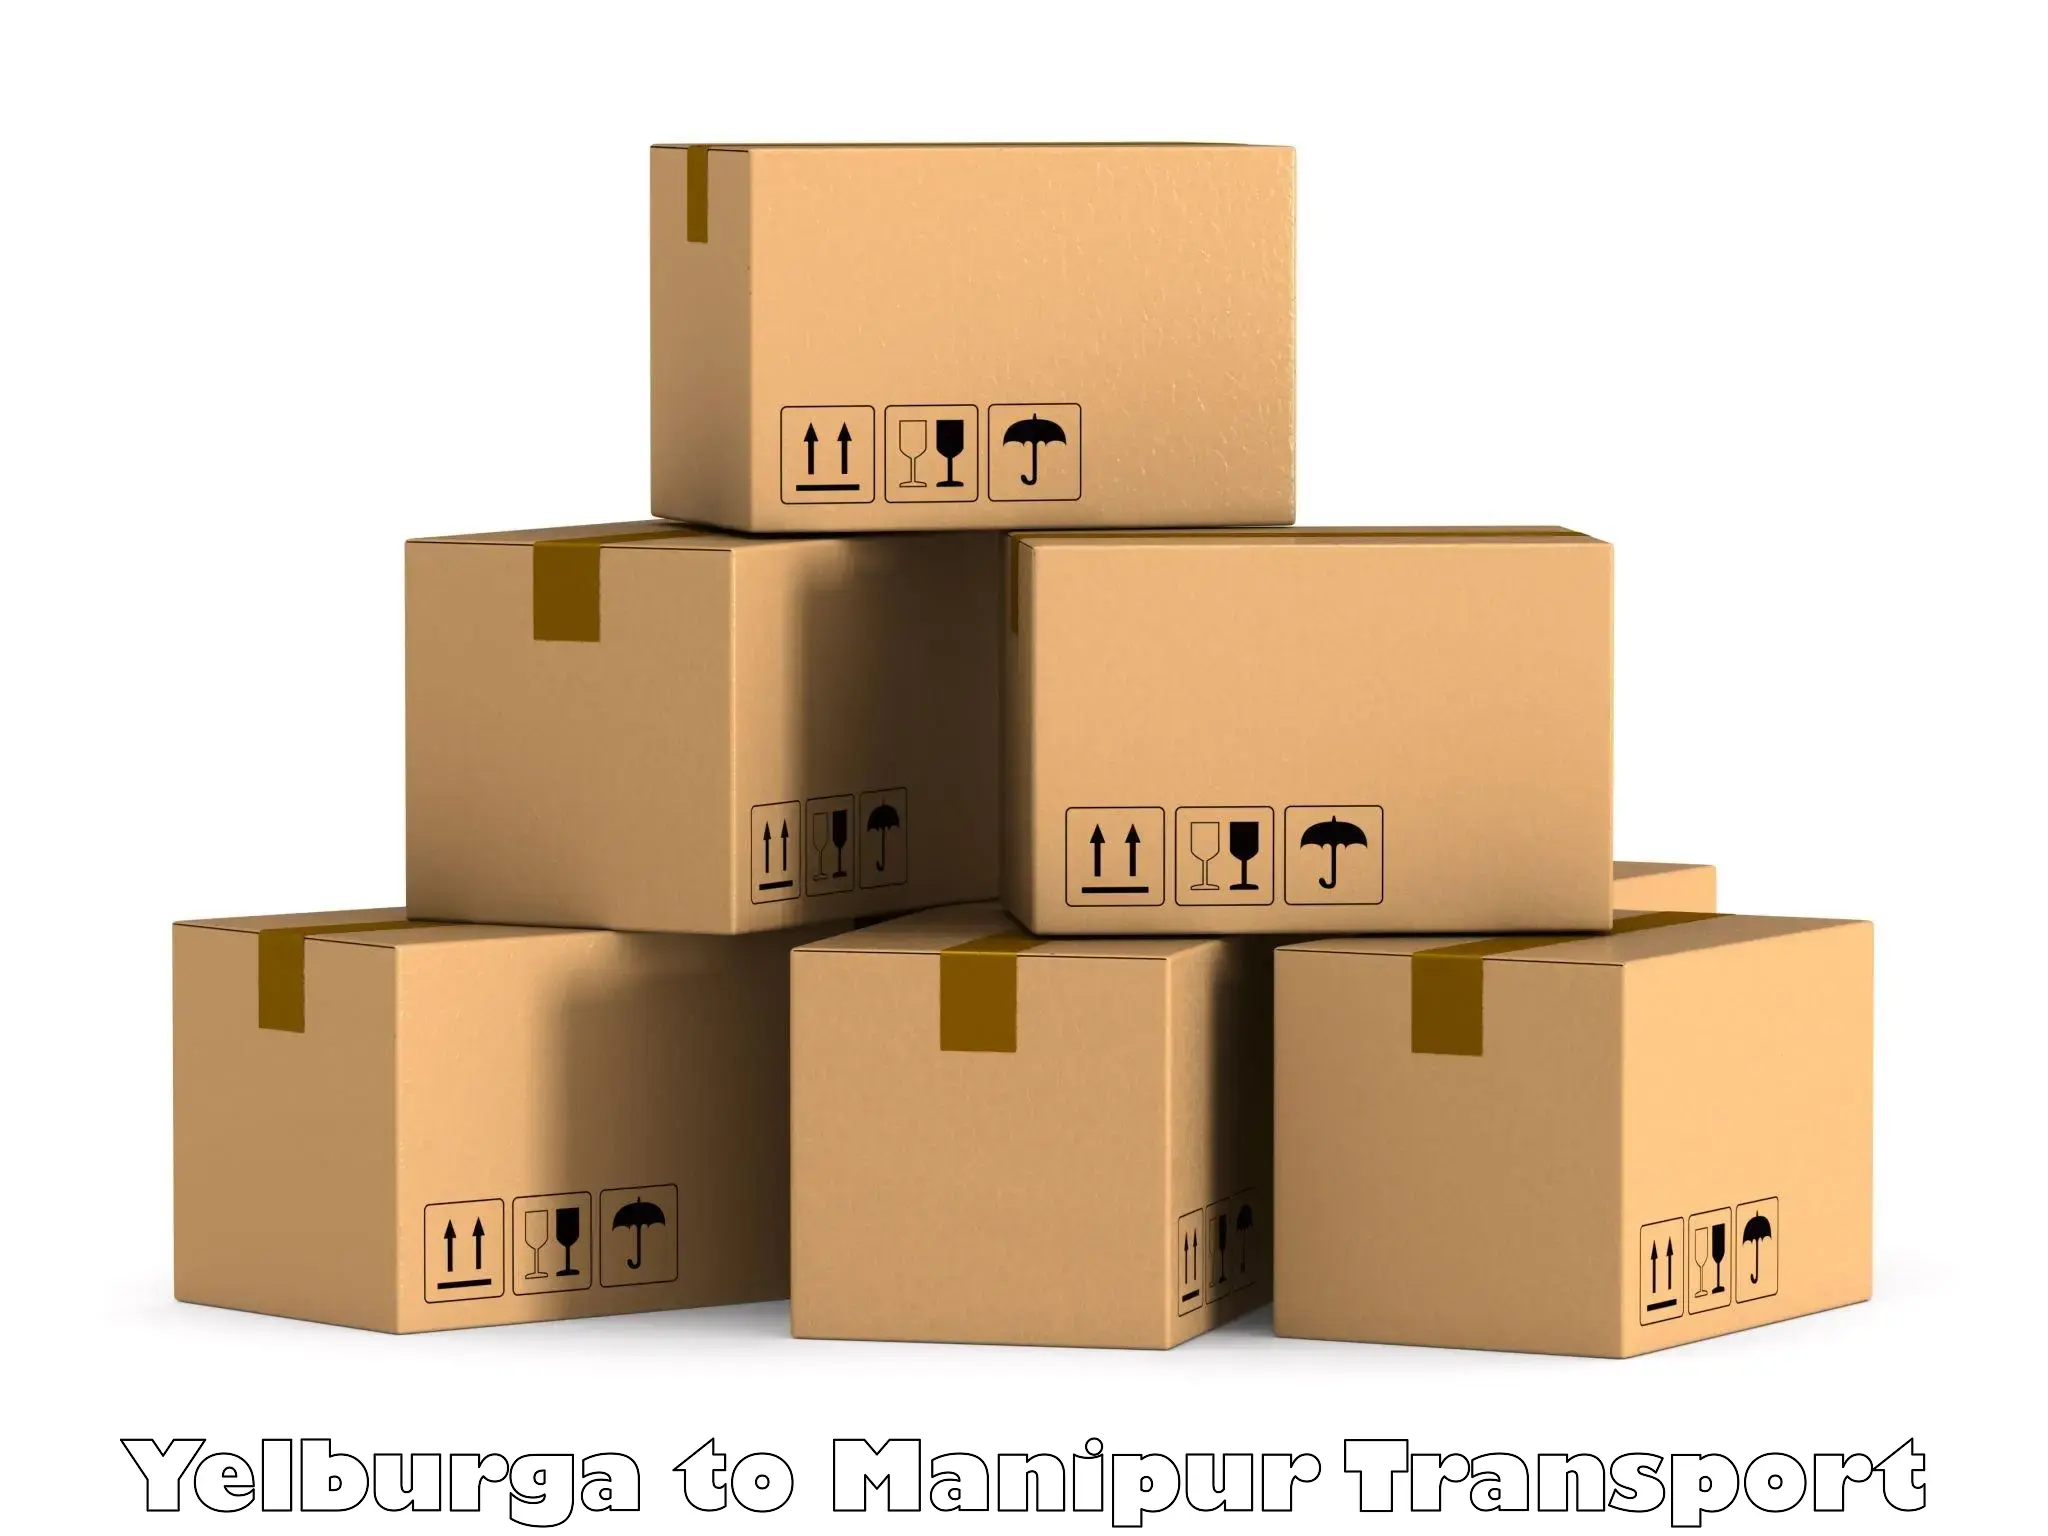 Daily parcel service transport Yelburga to Ukhrul